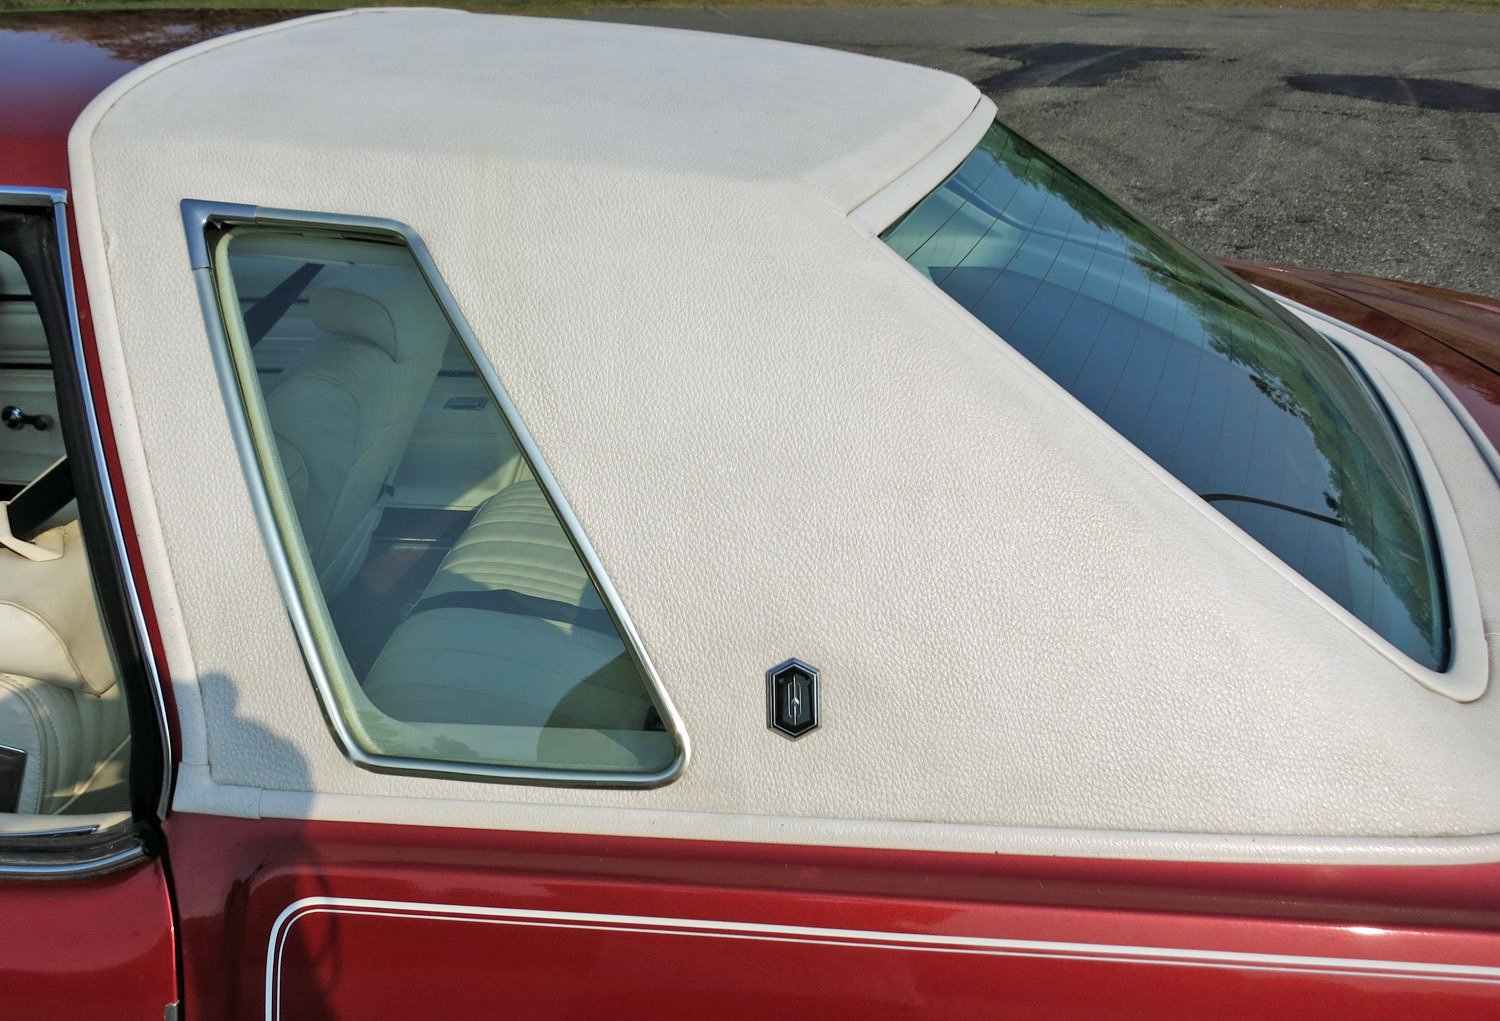 1976 Oldsmobile Cutlass